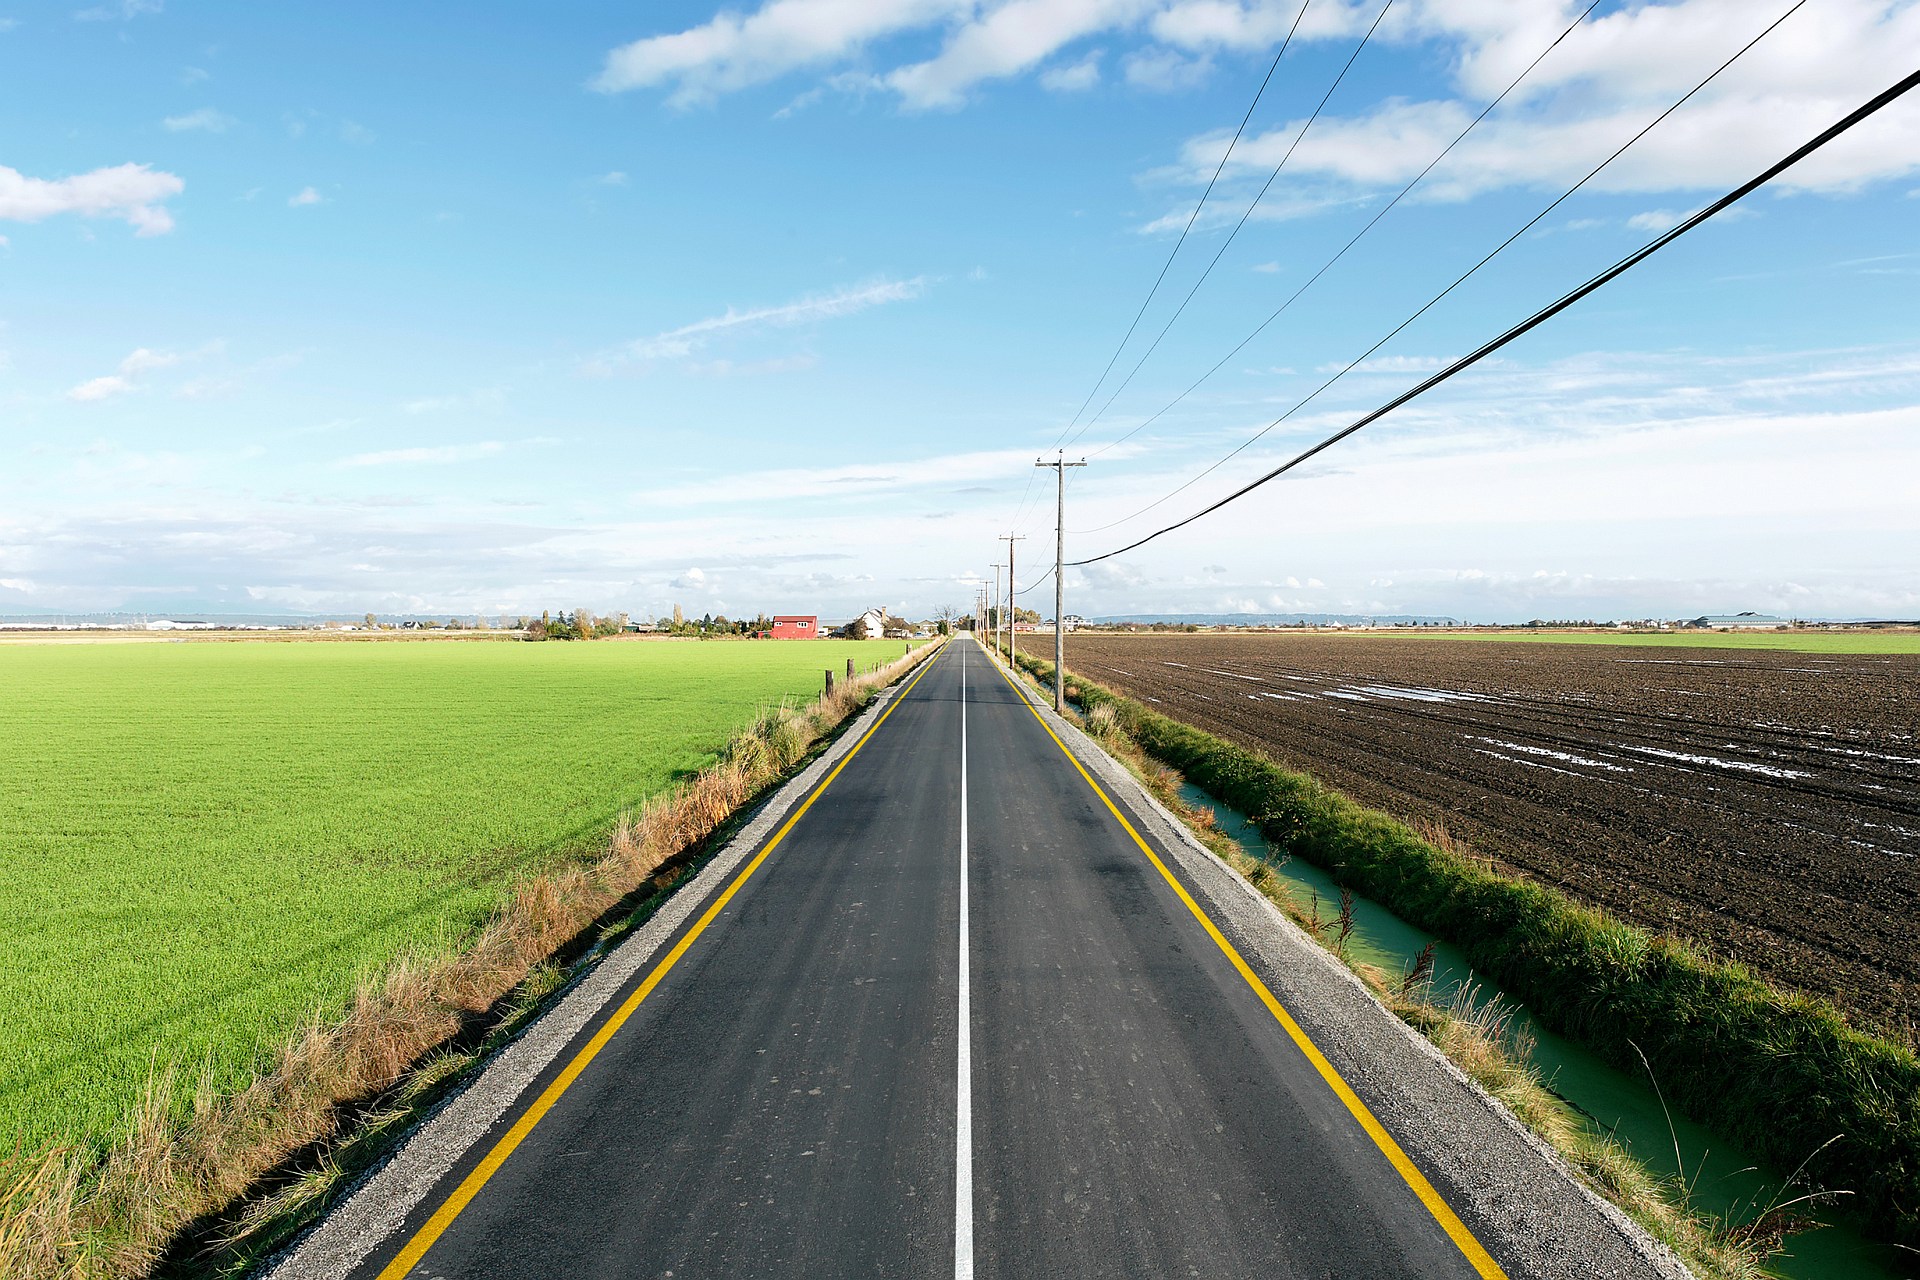 fields, roads - desktop wallpaper